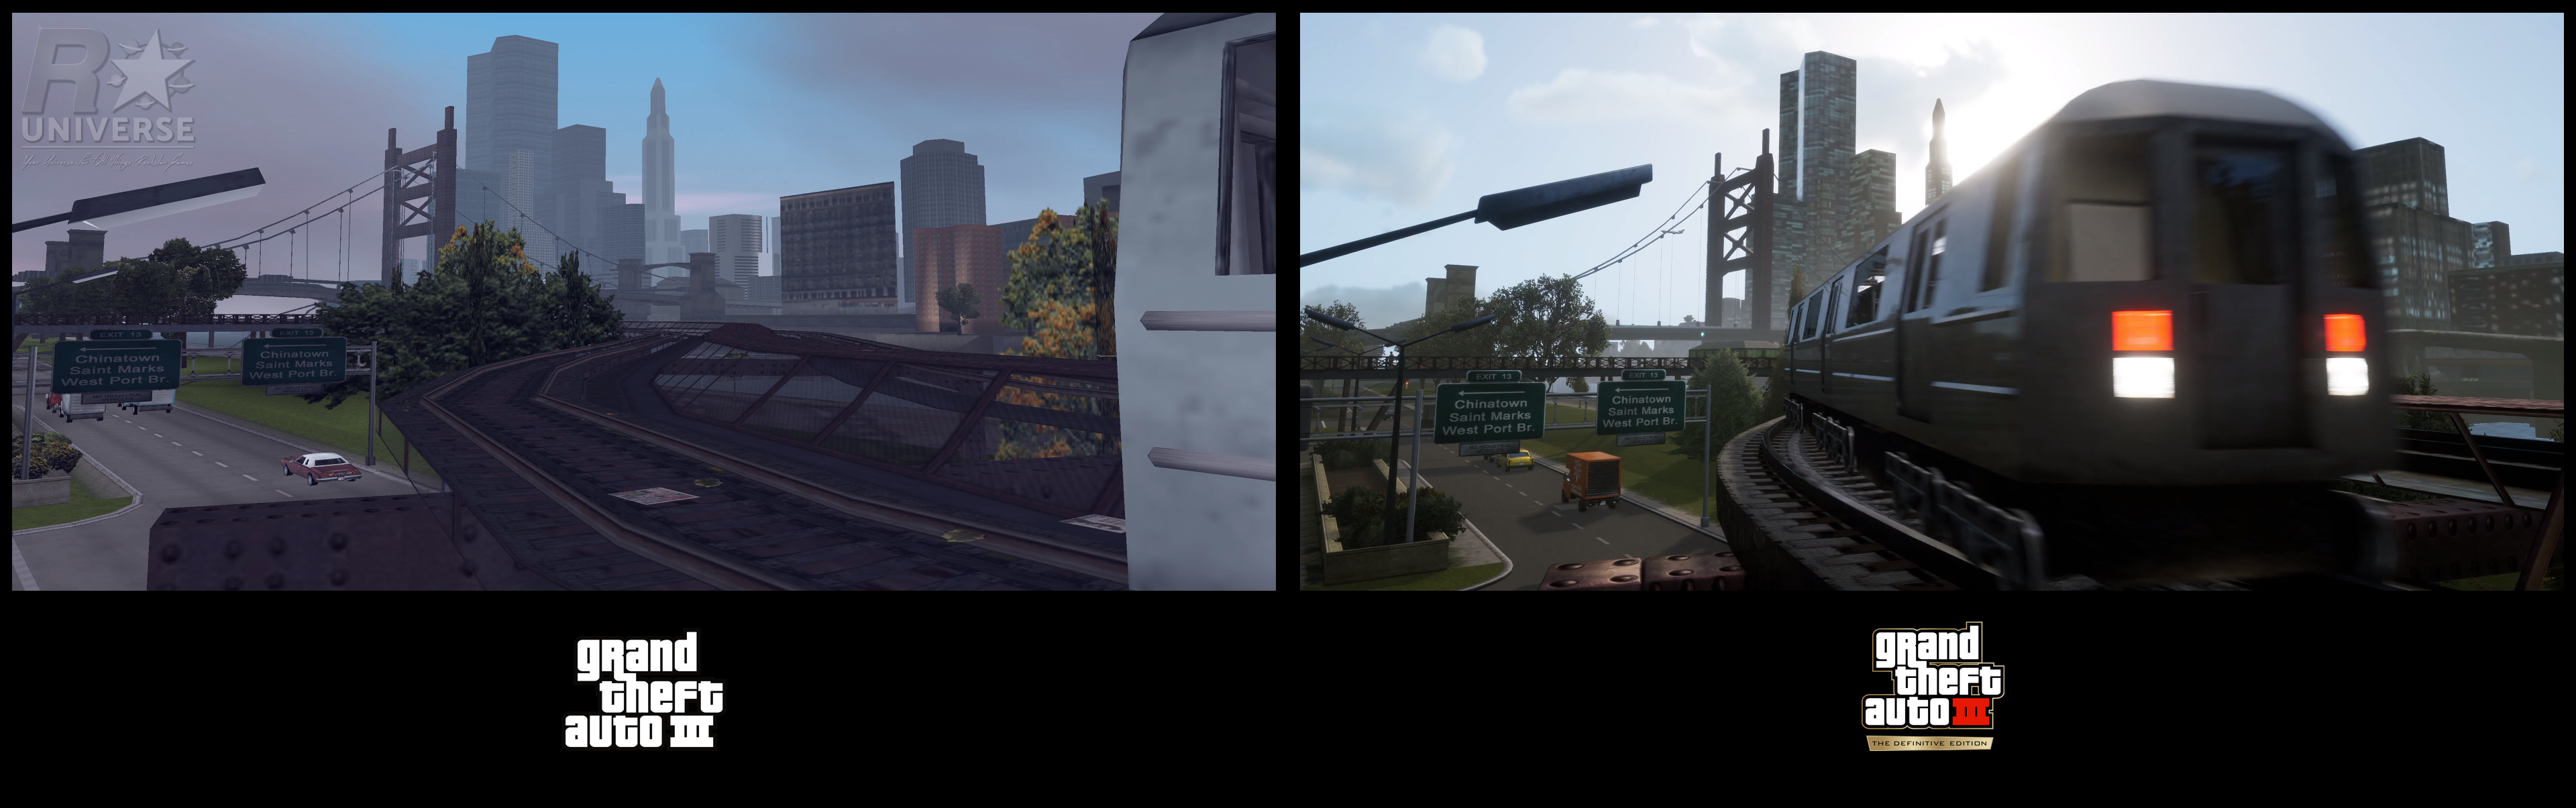 Grand Theft Auto III - Original vs Definitive Edition Comparison 